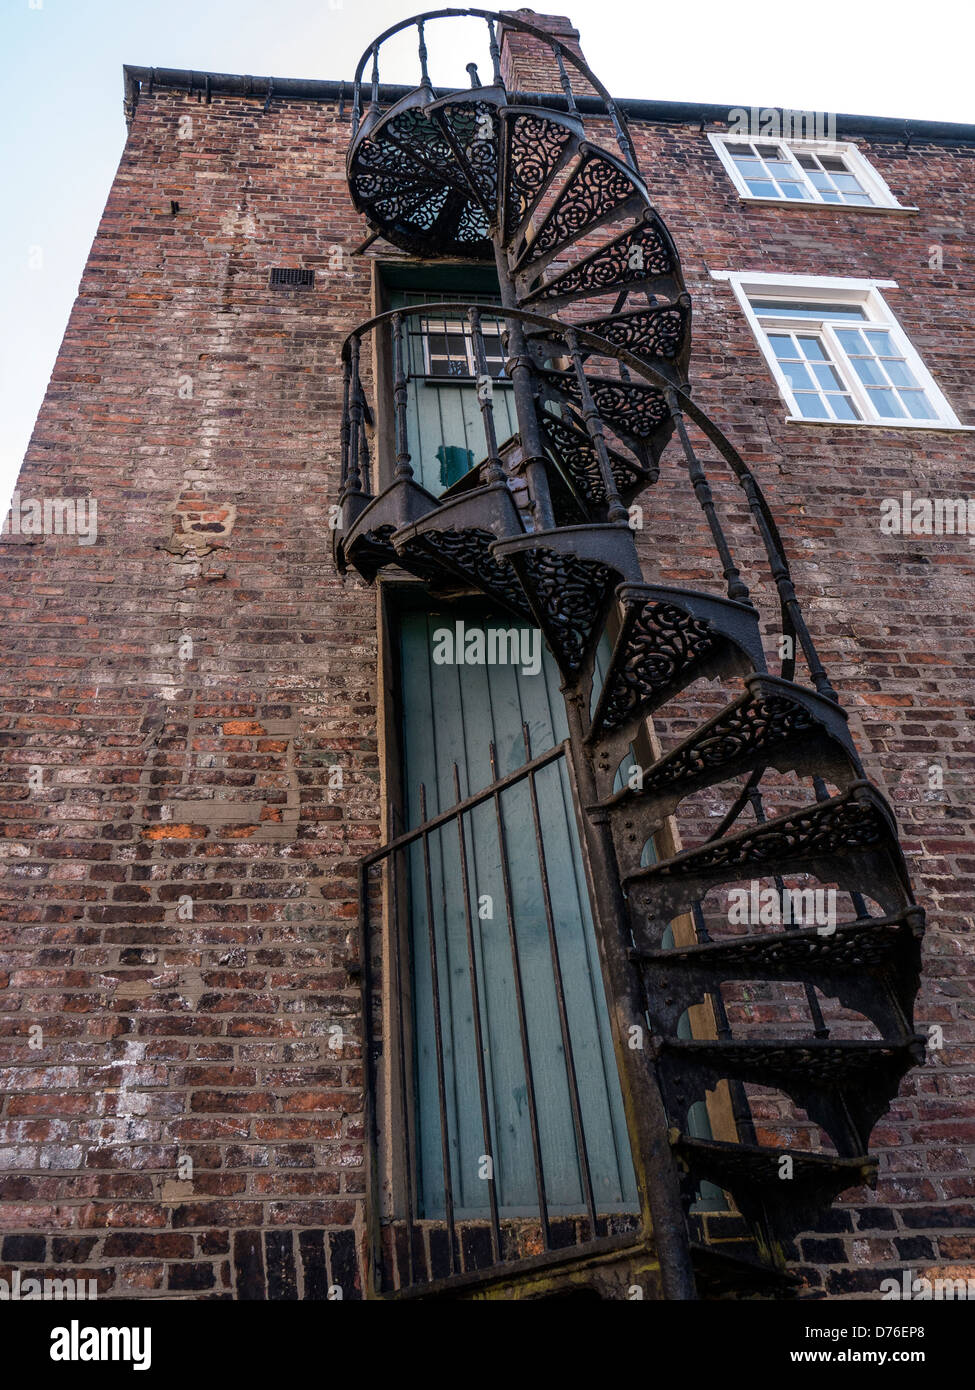 LINCOLN, Royaume-Uni - 20 AVRIL 2013 : escalier métallique en spirale sur le côté du bâtiment Banque D'Images